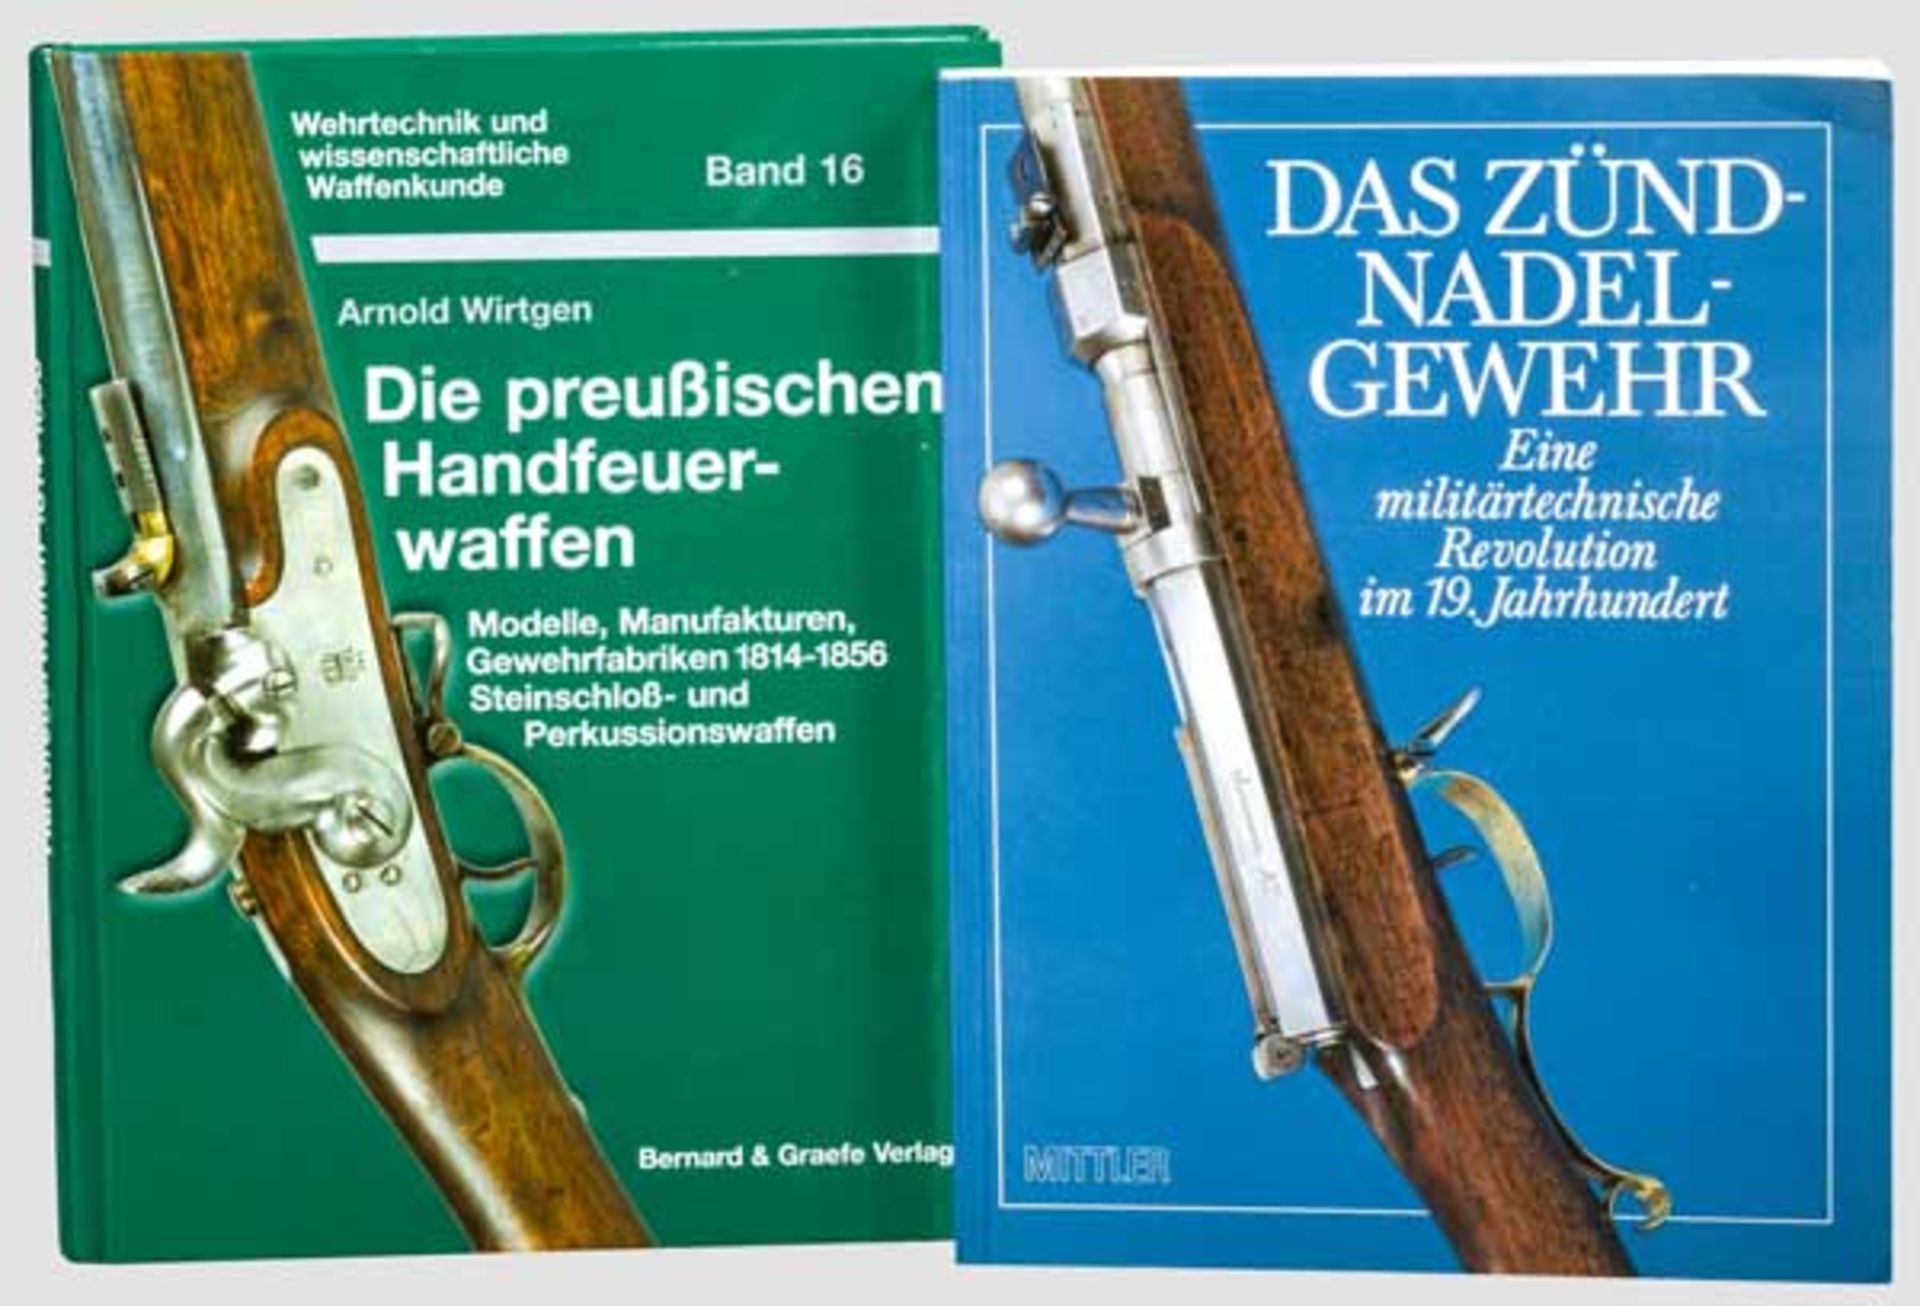 Zwei Waffenbücher, Deutschland, 19. Jhdt. Wirtgen, Arnold, Die preussischen Handfeuerwaffen, Bonn